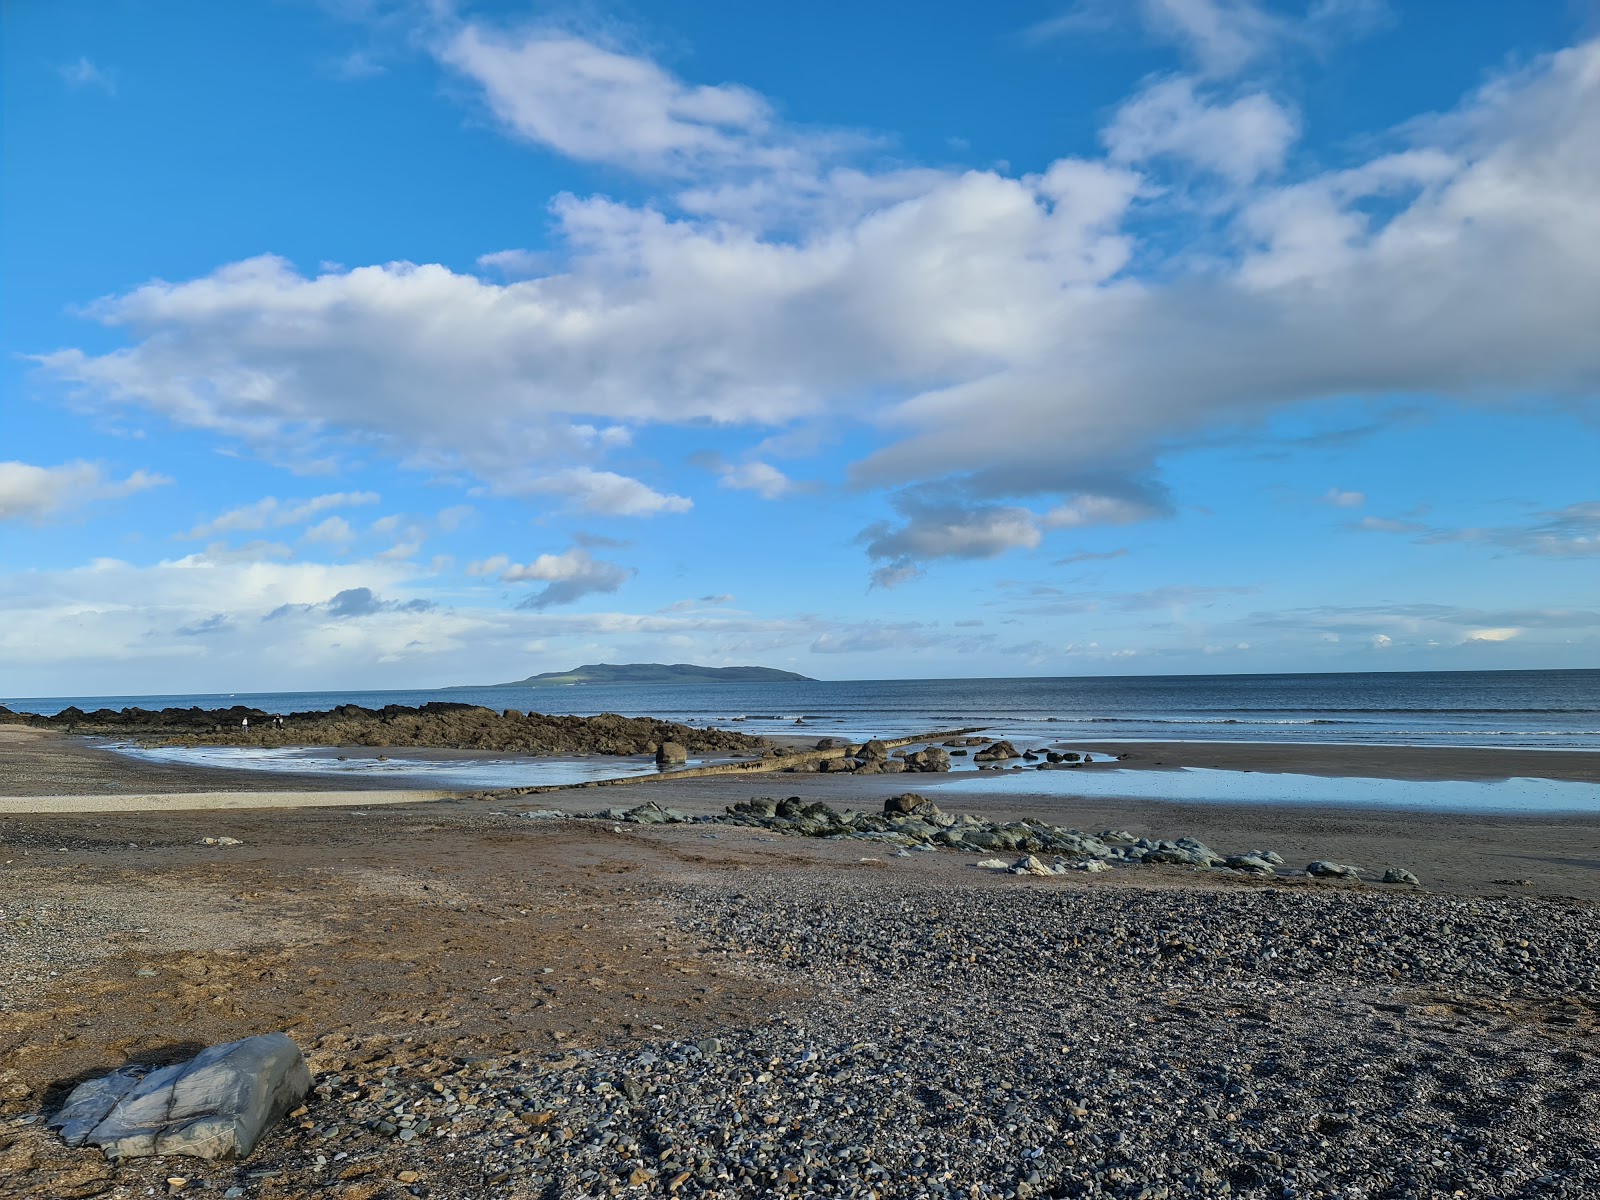 Zdjęcie Donabate beach - popularne miejsce wśród znawców relaksu